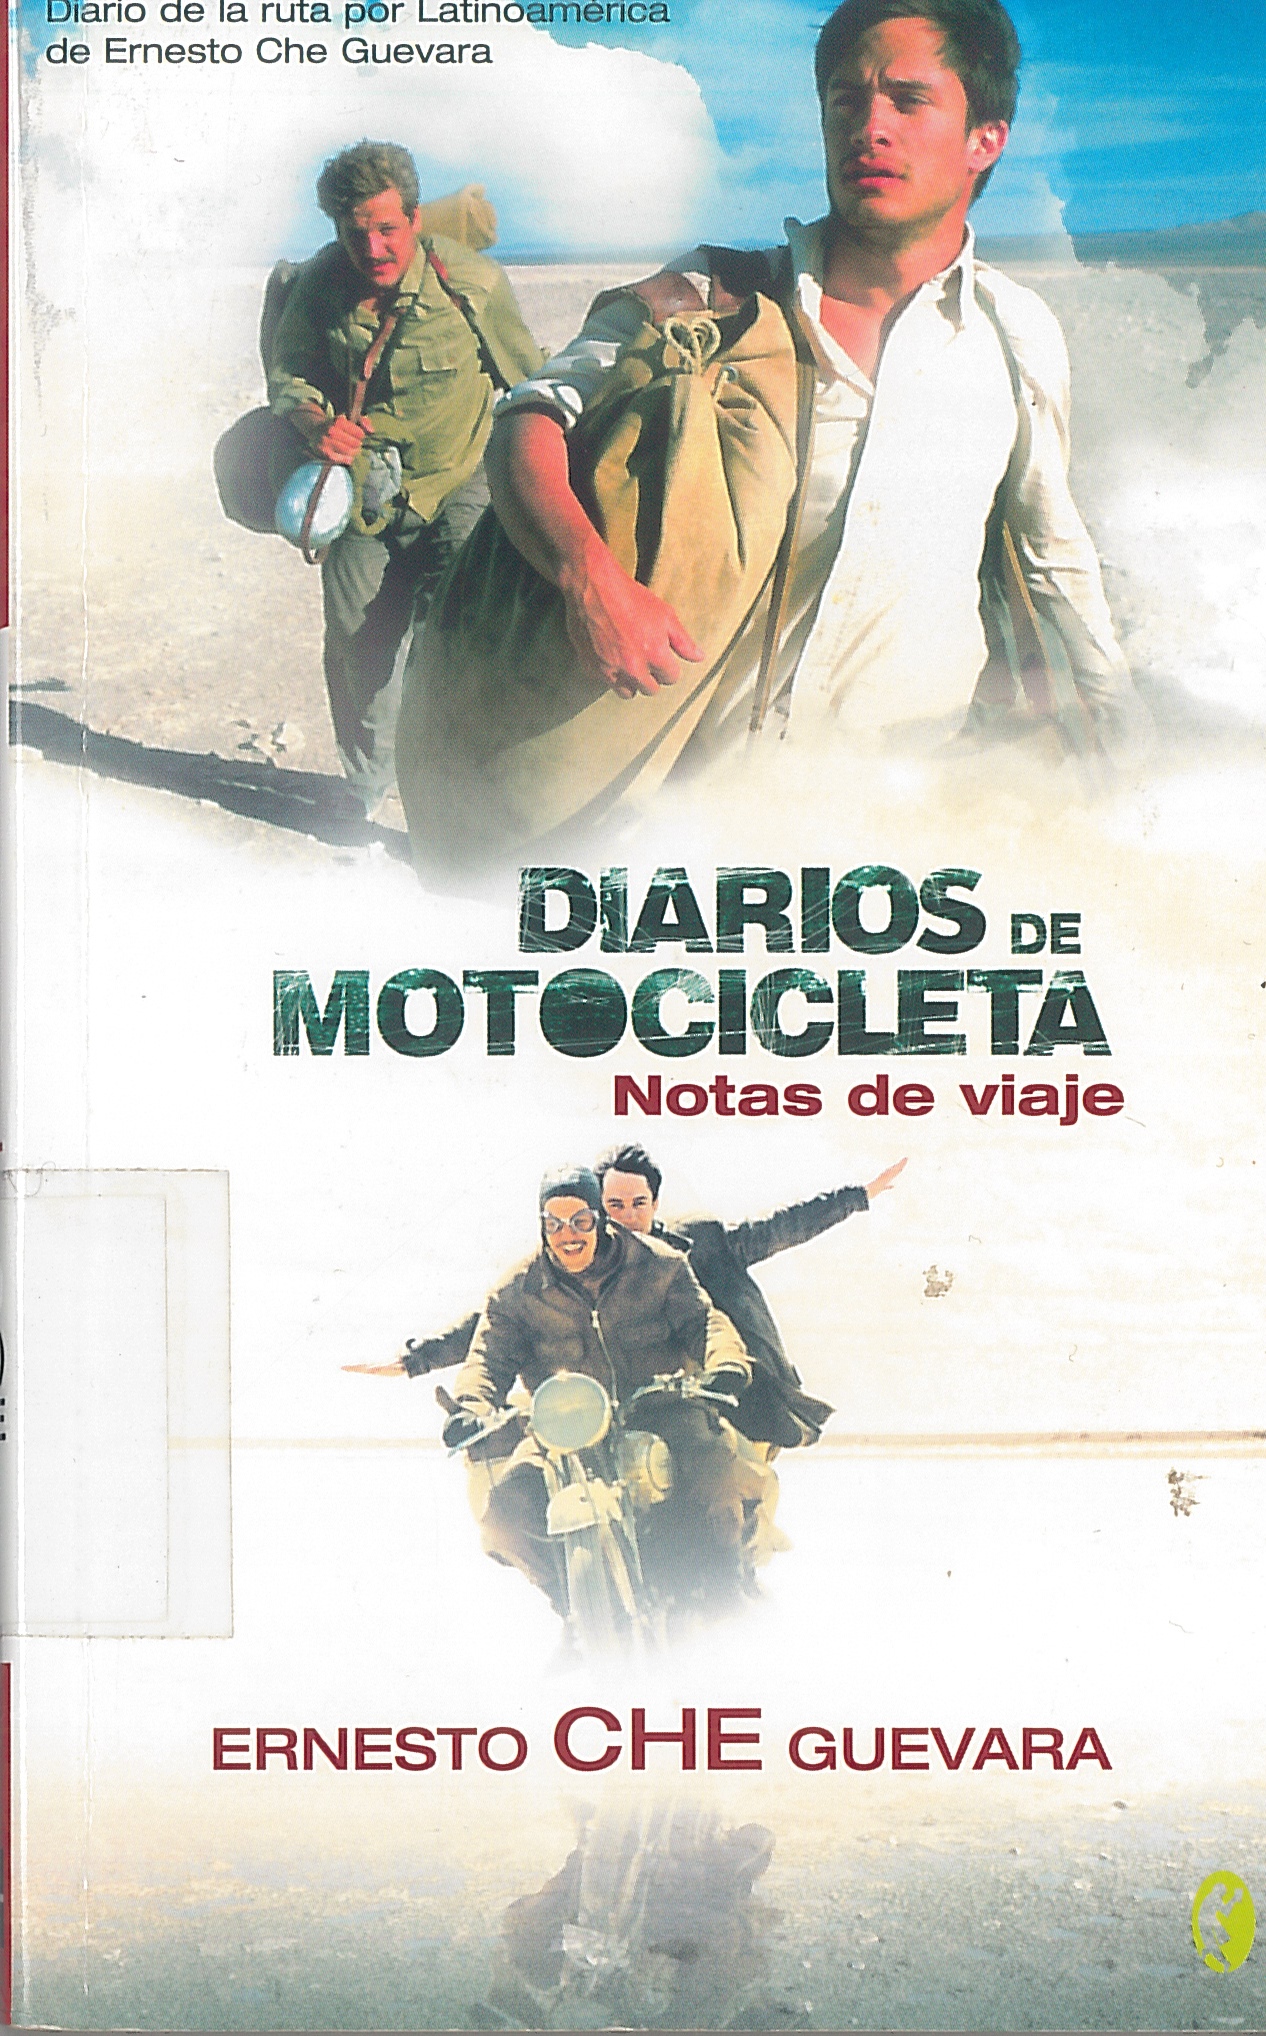 Diarios de motocicleta de Ernesto Che Guevara